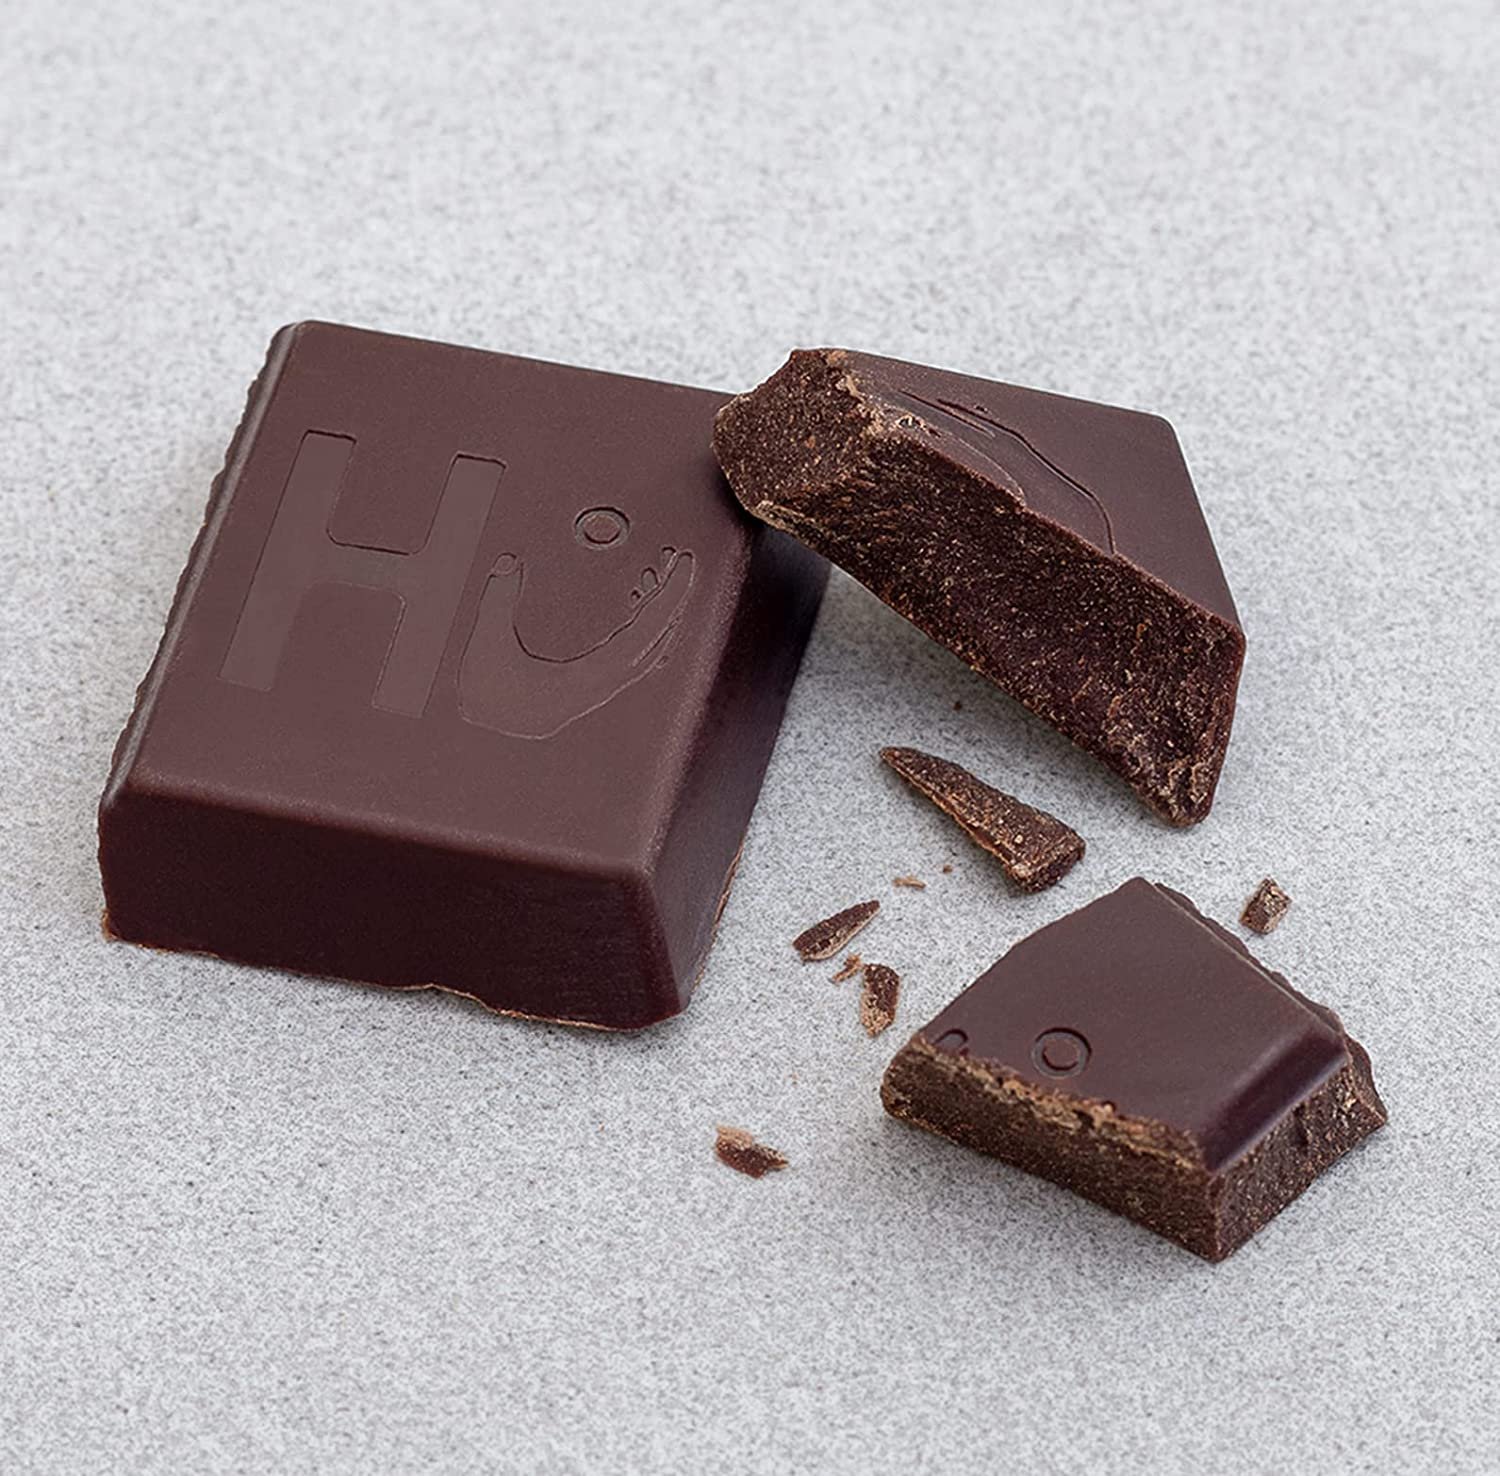 Hu Dark Chocolate Bars- Organic Vegan Chocolate, Gluten Free, Paleo, Dark Chocolate (Copy) (Copy) (Copy) (Copy)